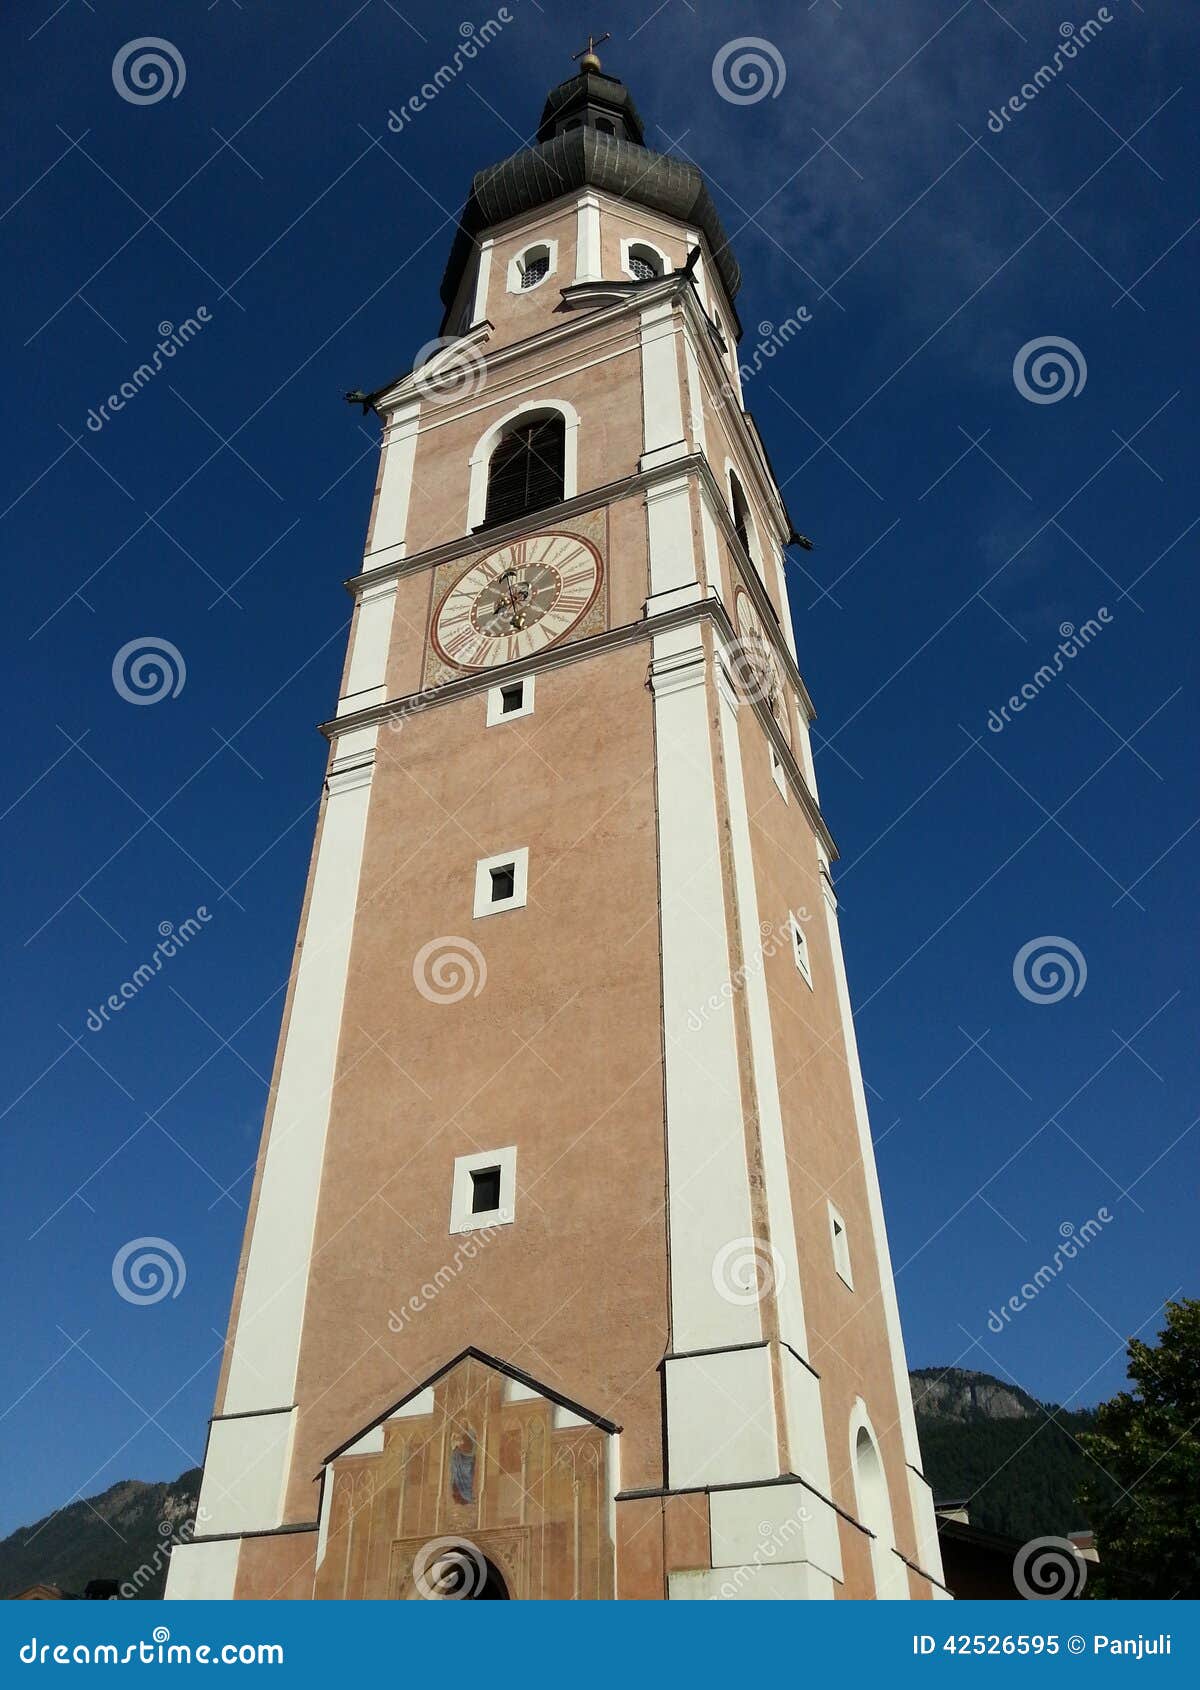 kastelruth bell tower in sud tyrol